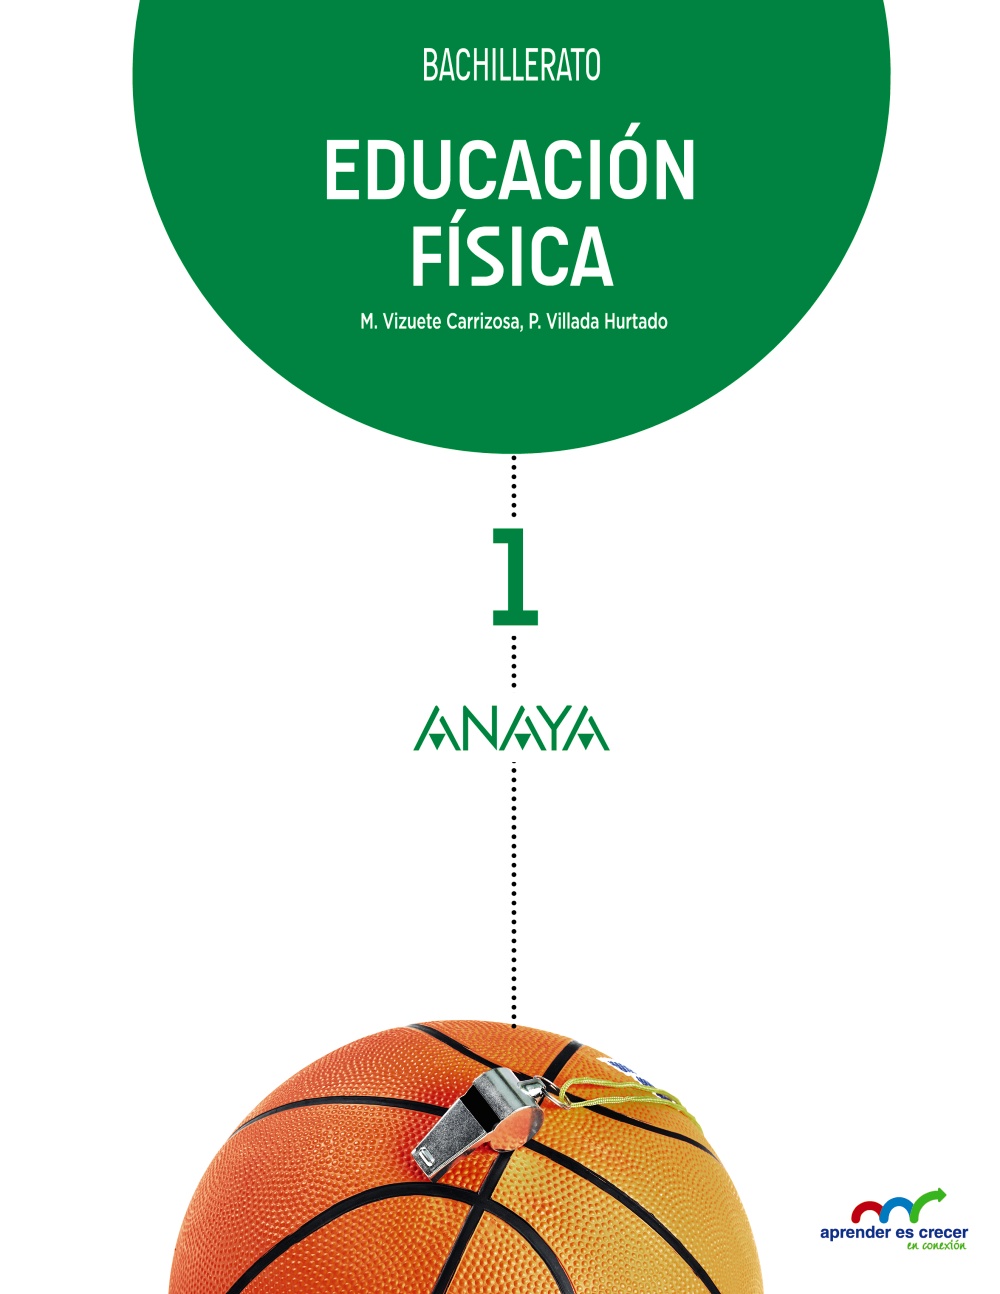 Solucionario Educacion Fisica 1 Bachillerato Anaya Aprender es Crecer PDF Ejercicios Resueltos-pdf